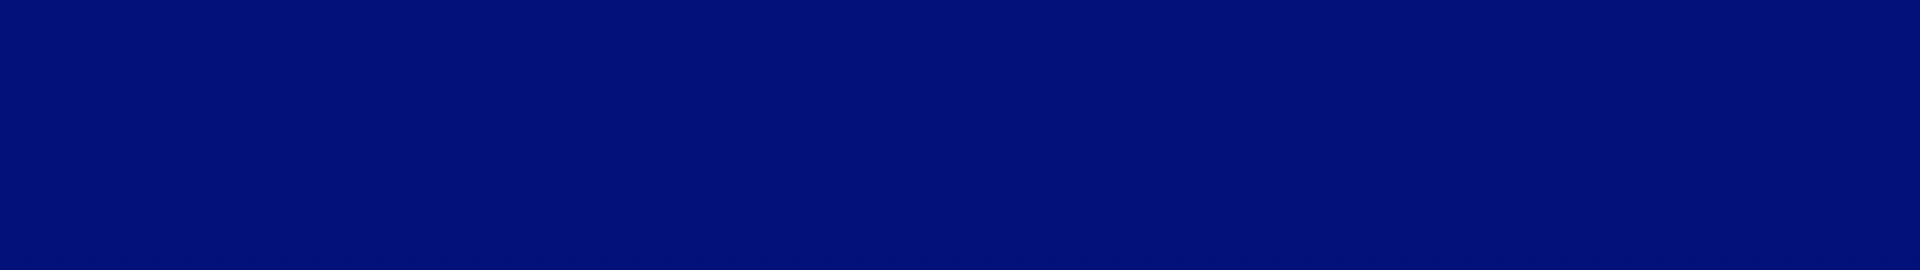 hintergrund-blau